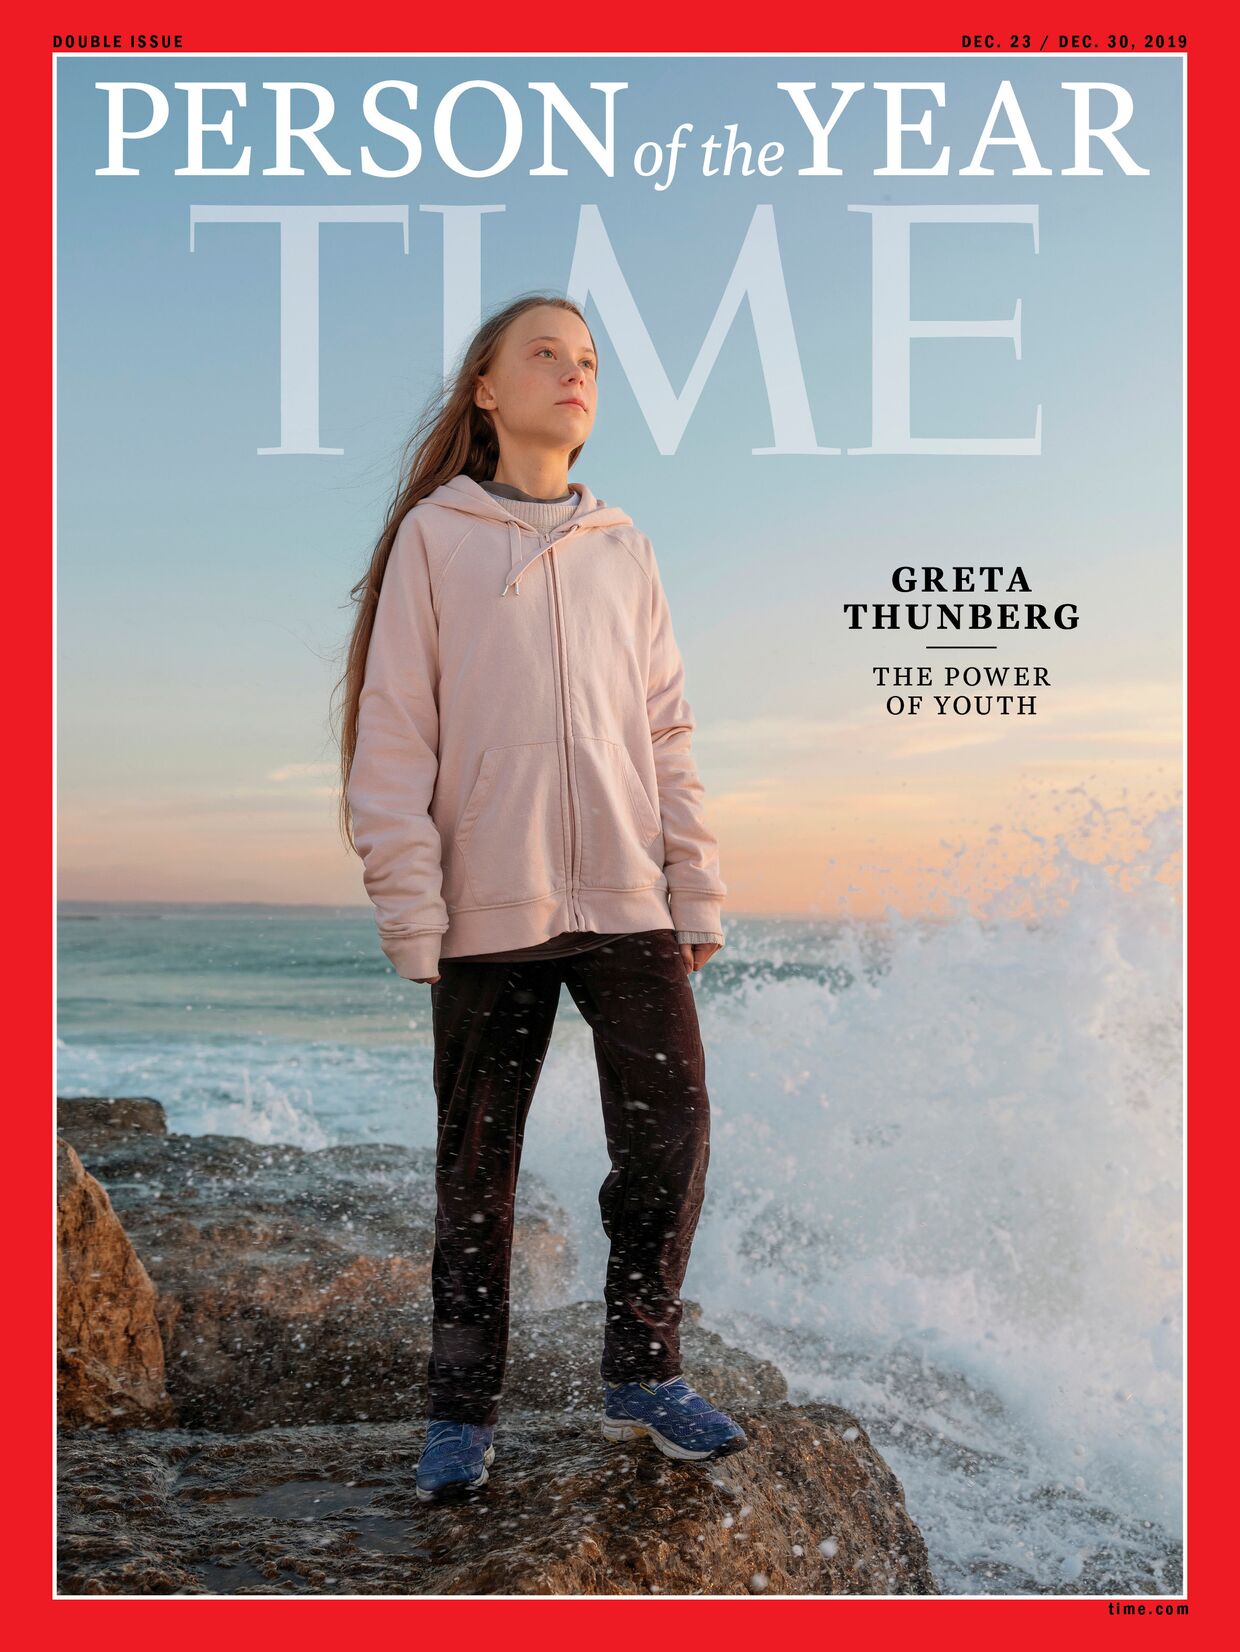 Обложка журнала Time